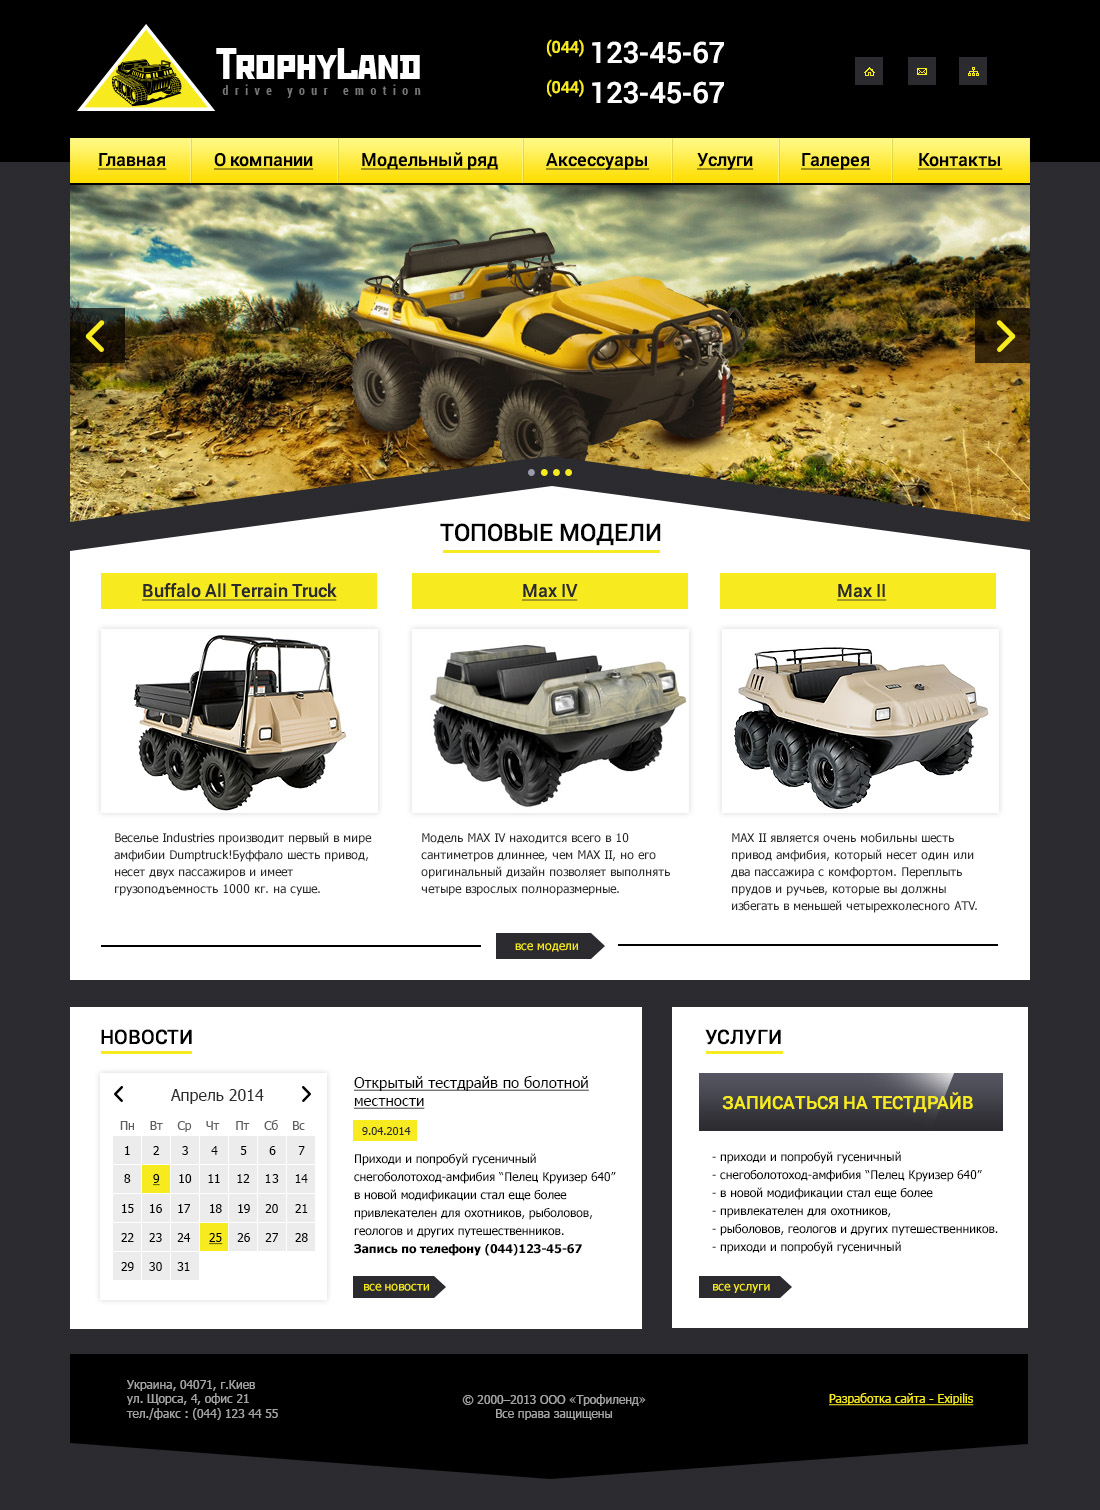 Homepage design of TrophyLand website